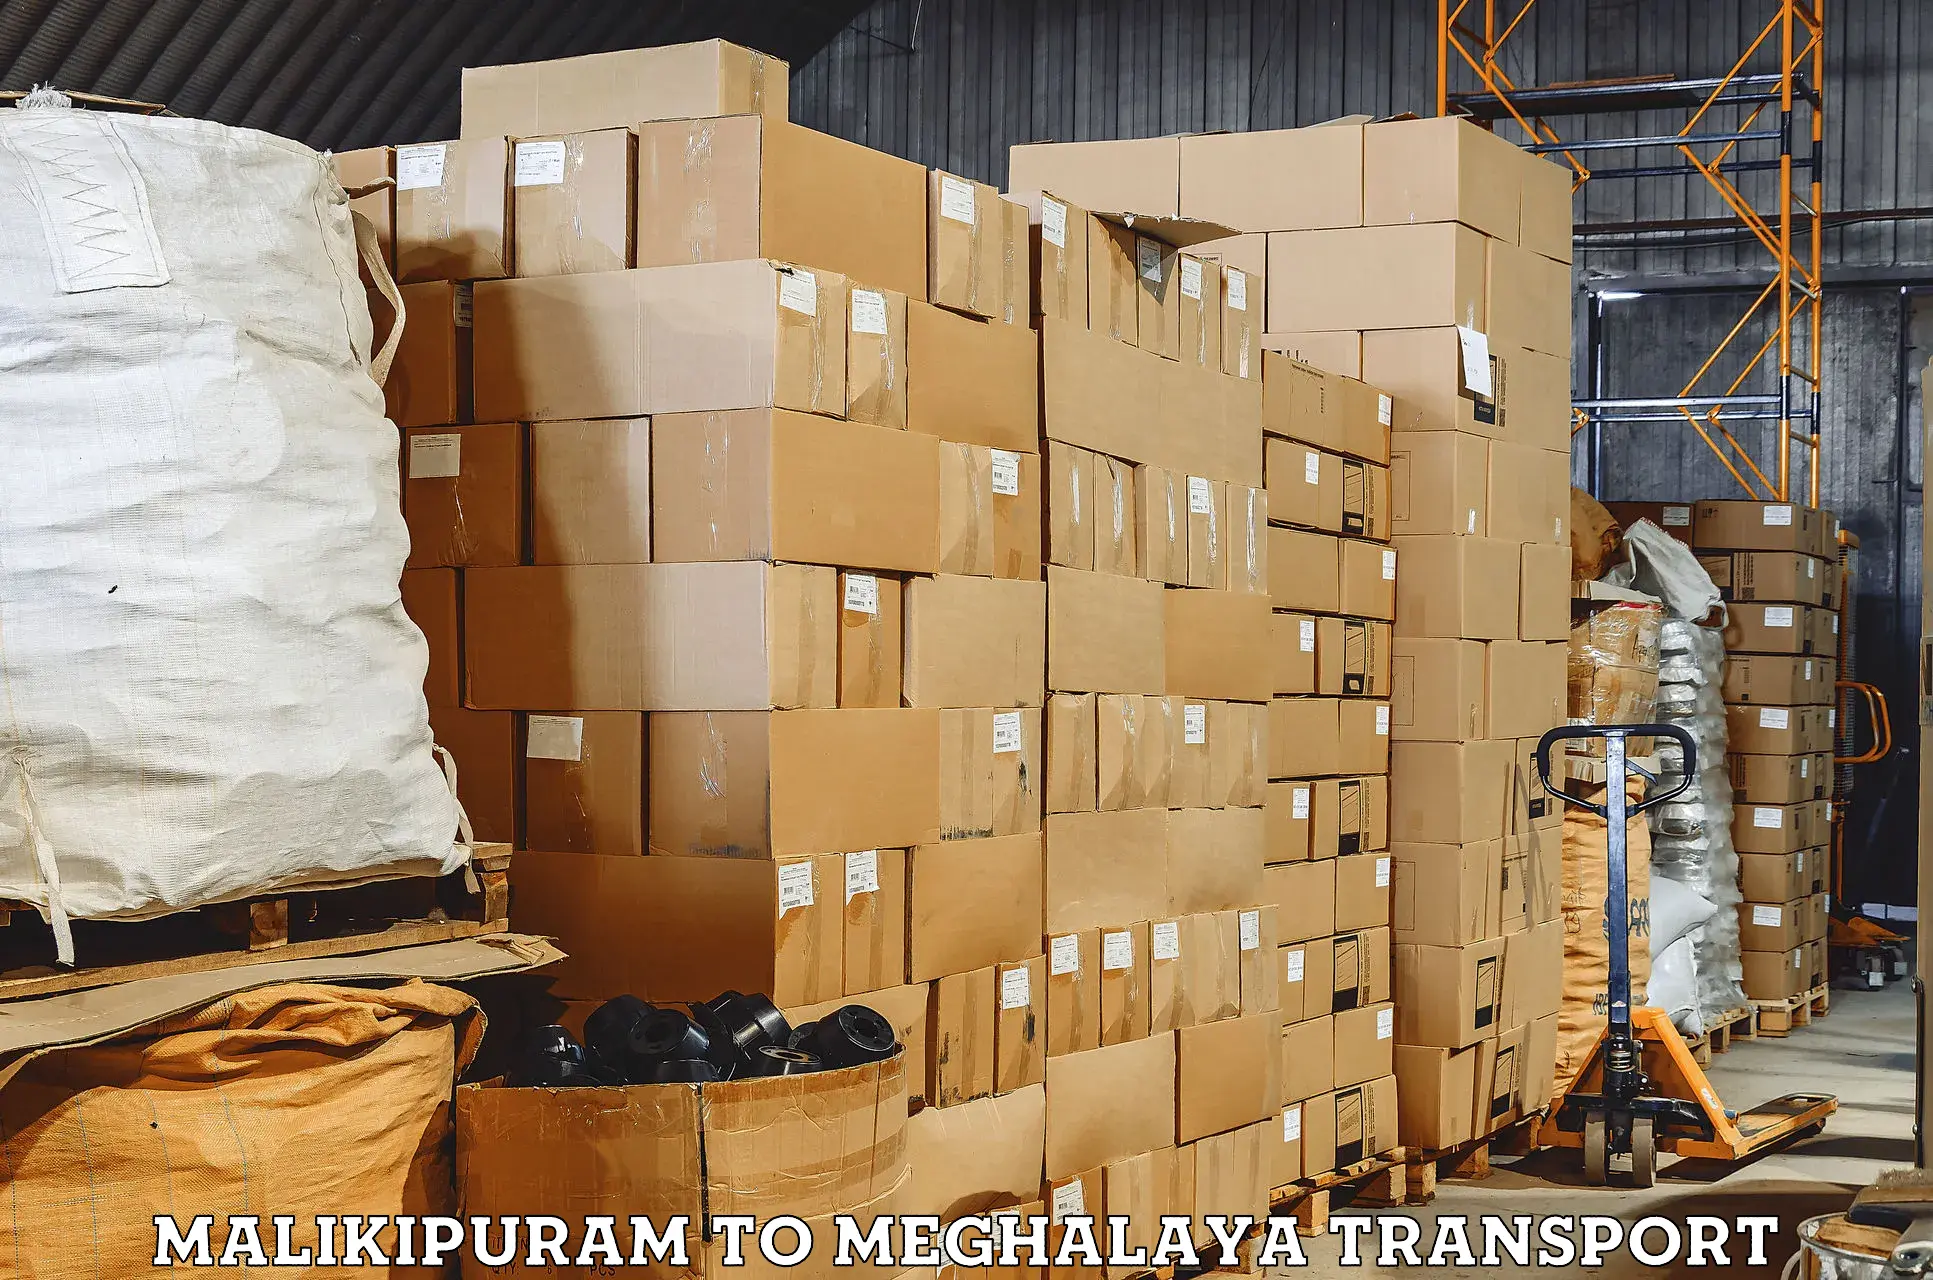 Vehicle transport services in Malikipuram to Meghalaya